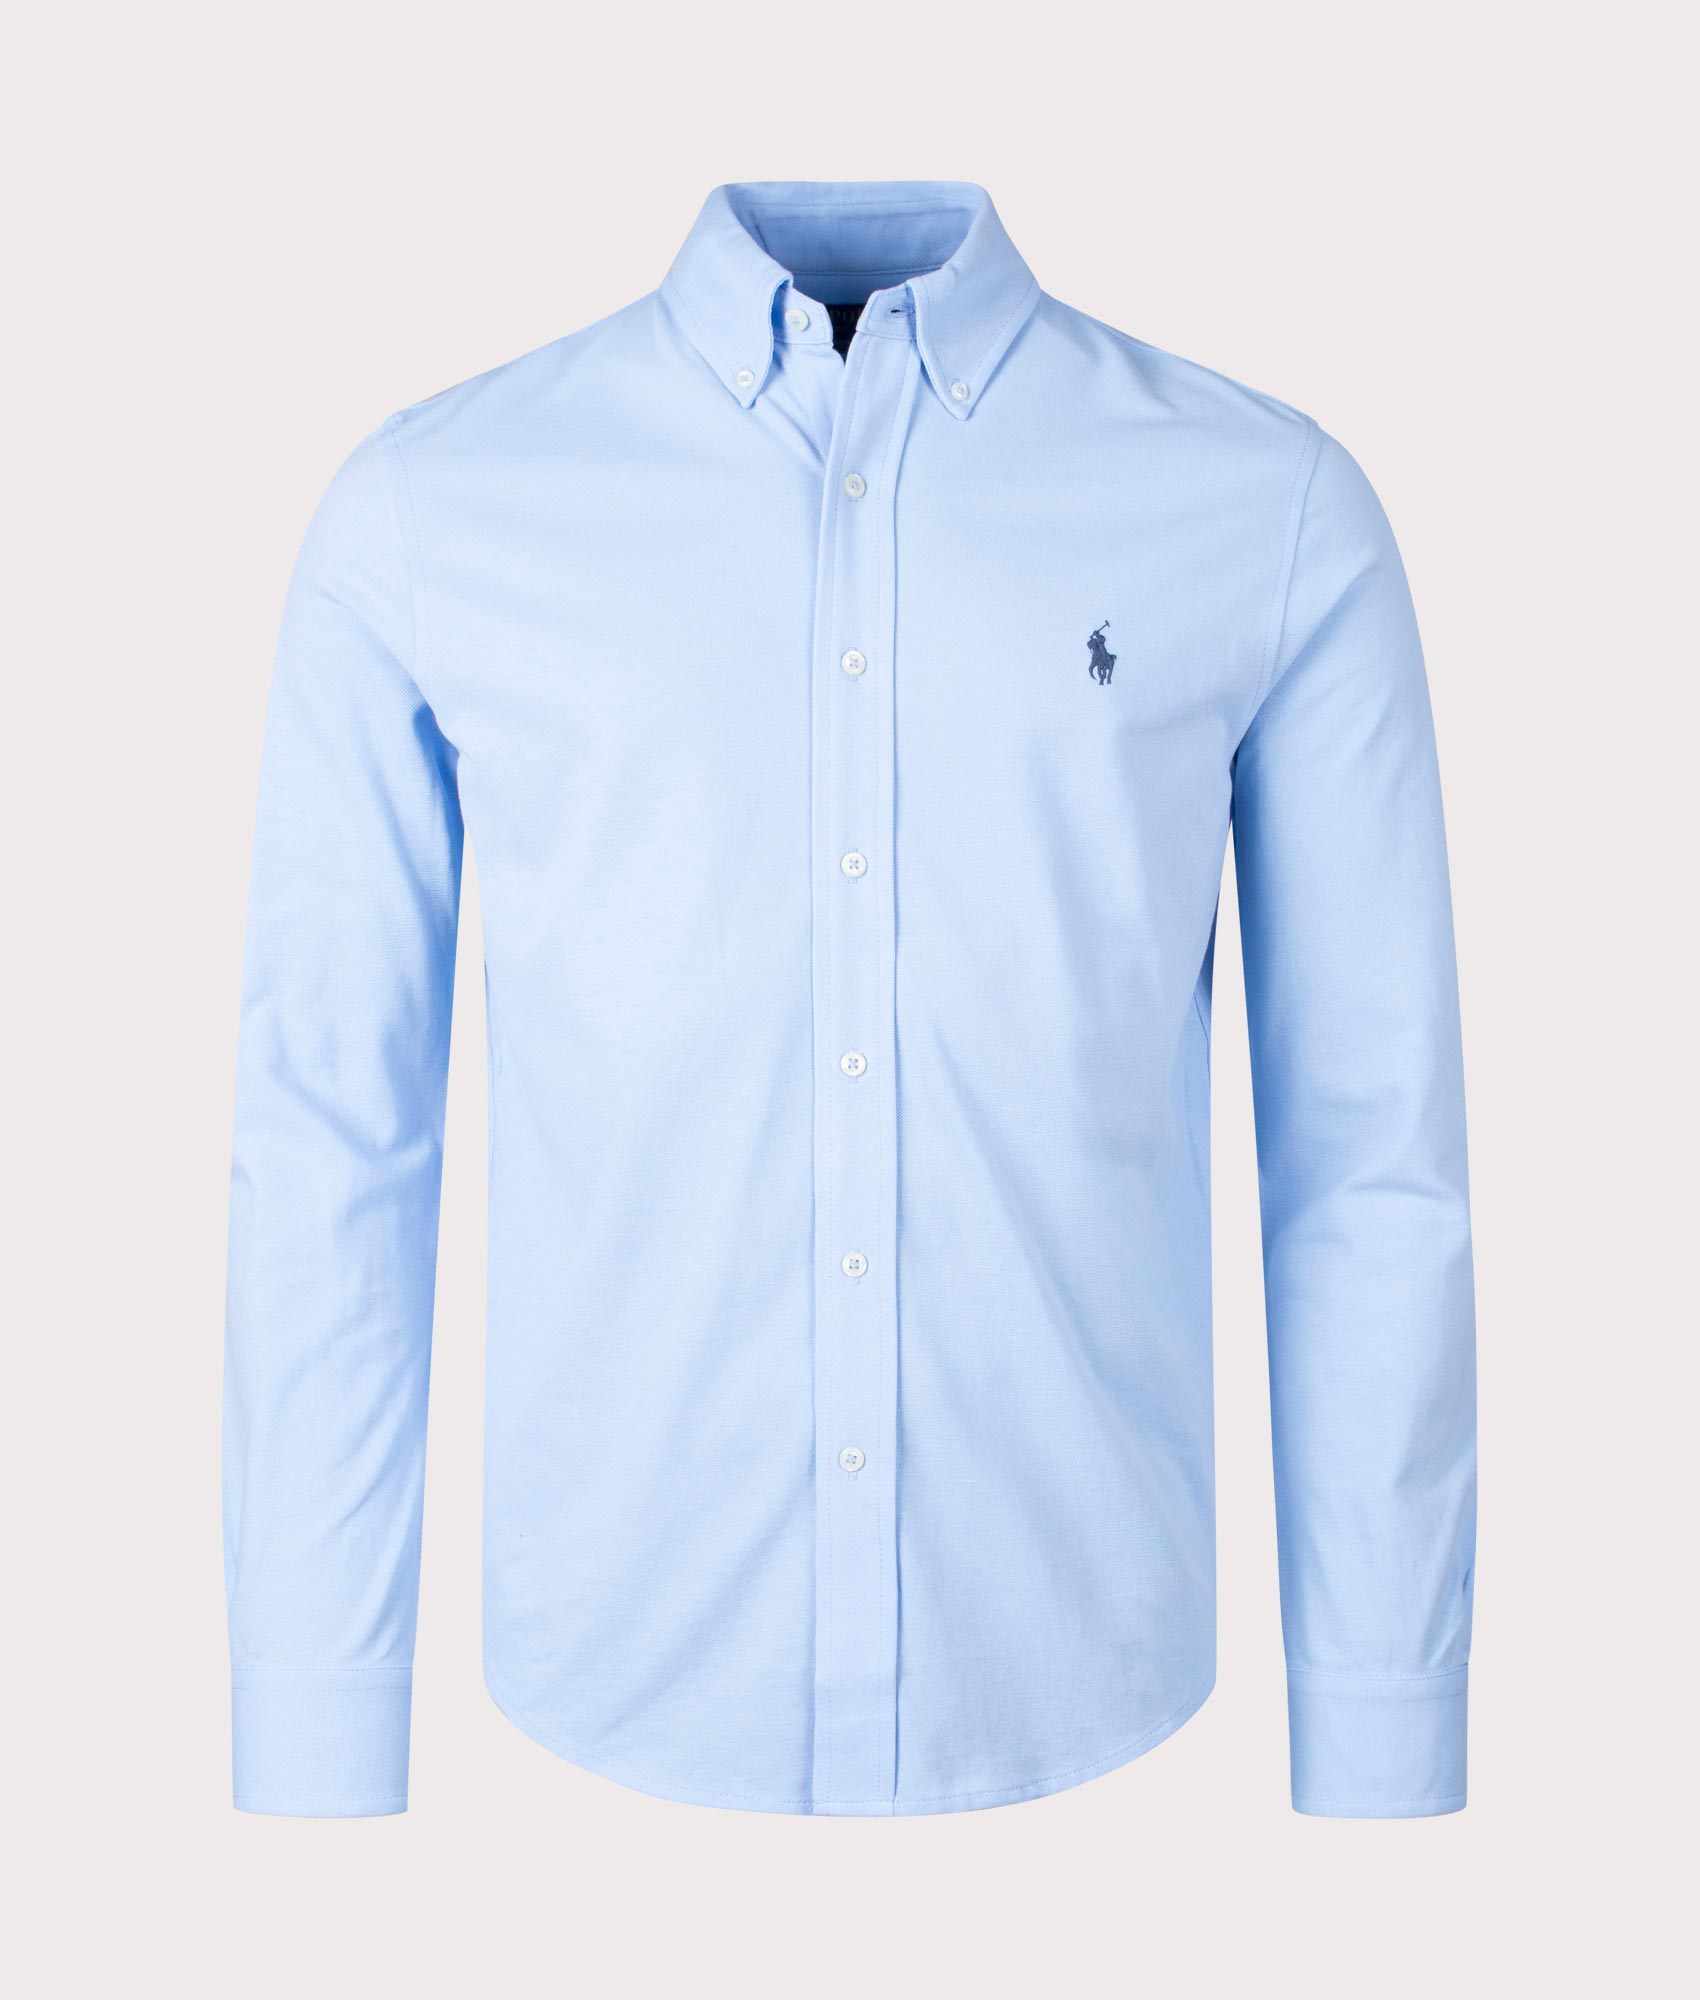 Polo Ralph Lauren Mens Featherweight Mesh Shirt - Colour: 117 Bluebell - Size: Medium